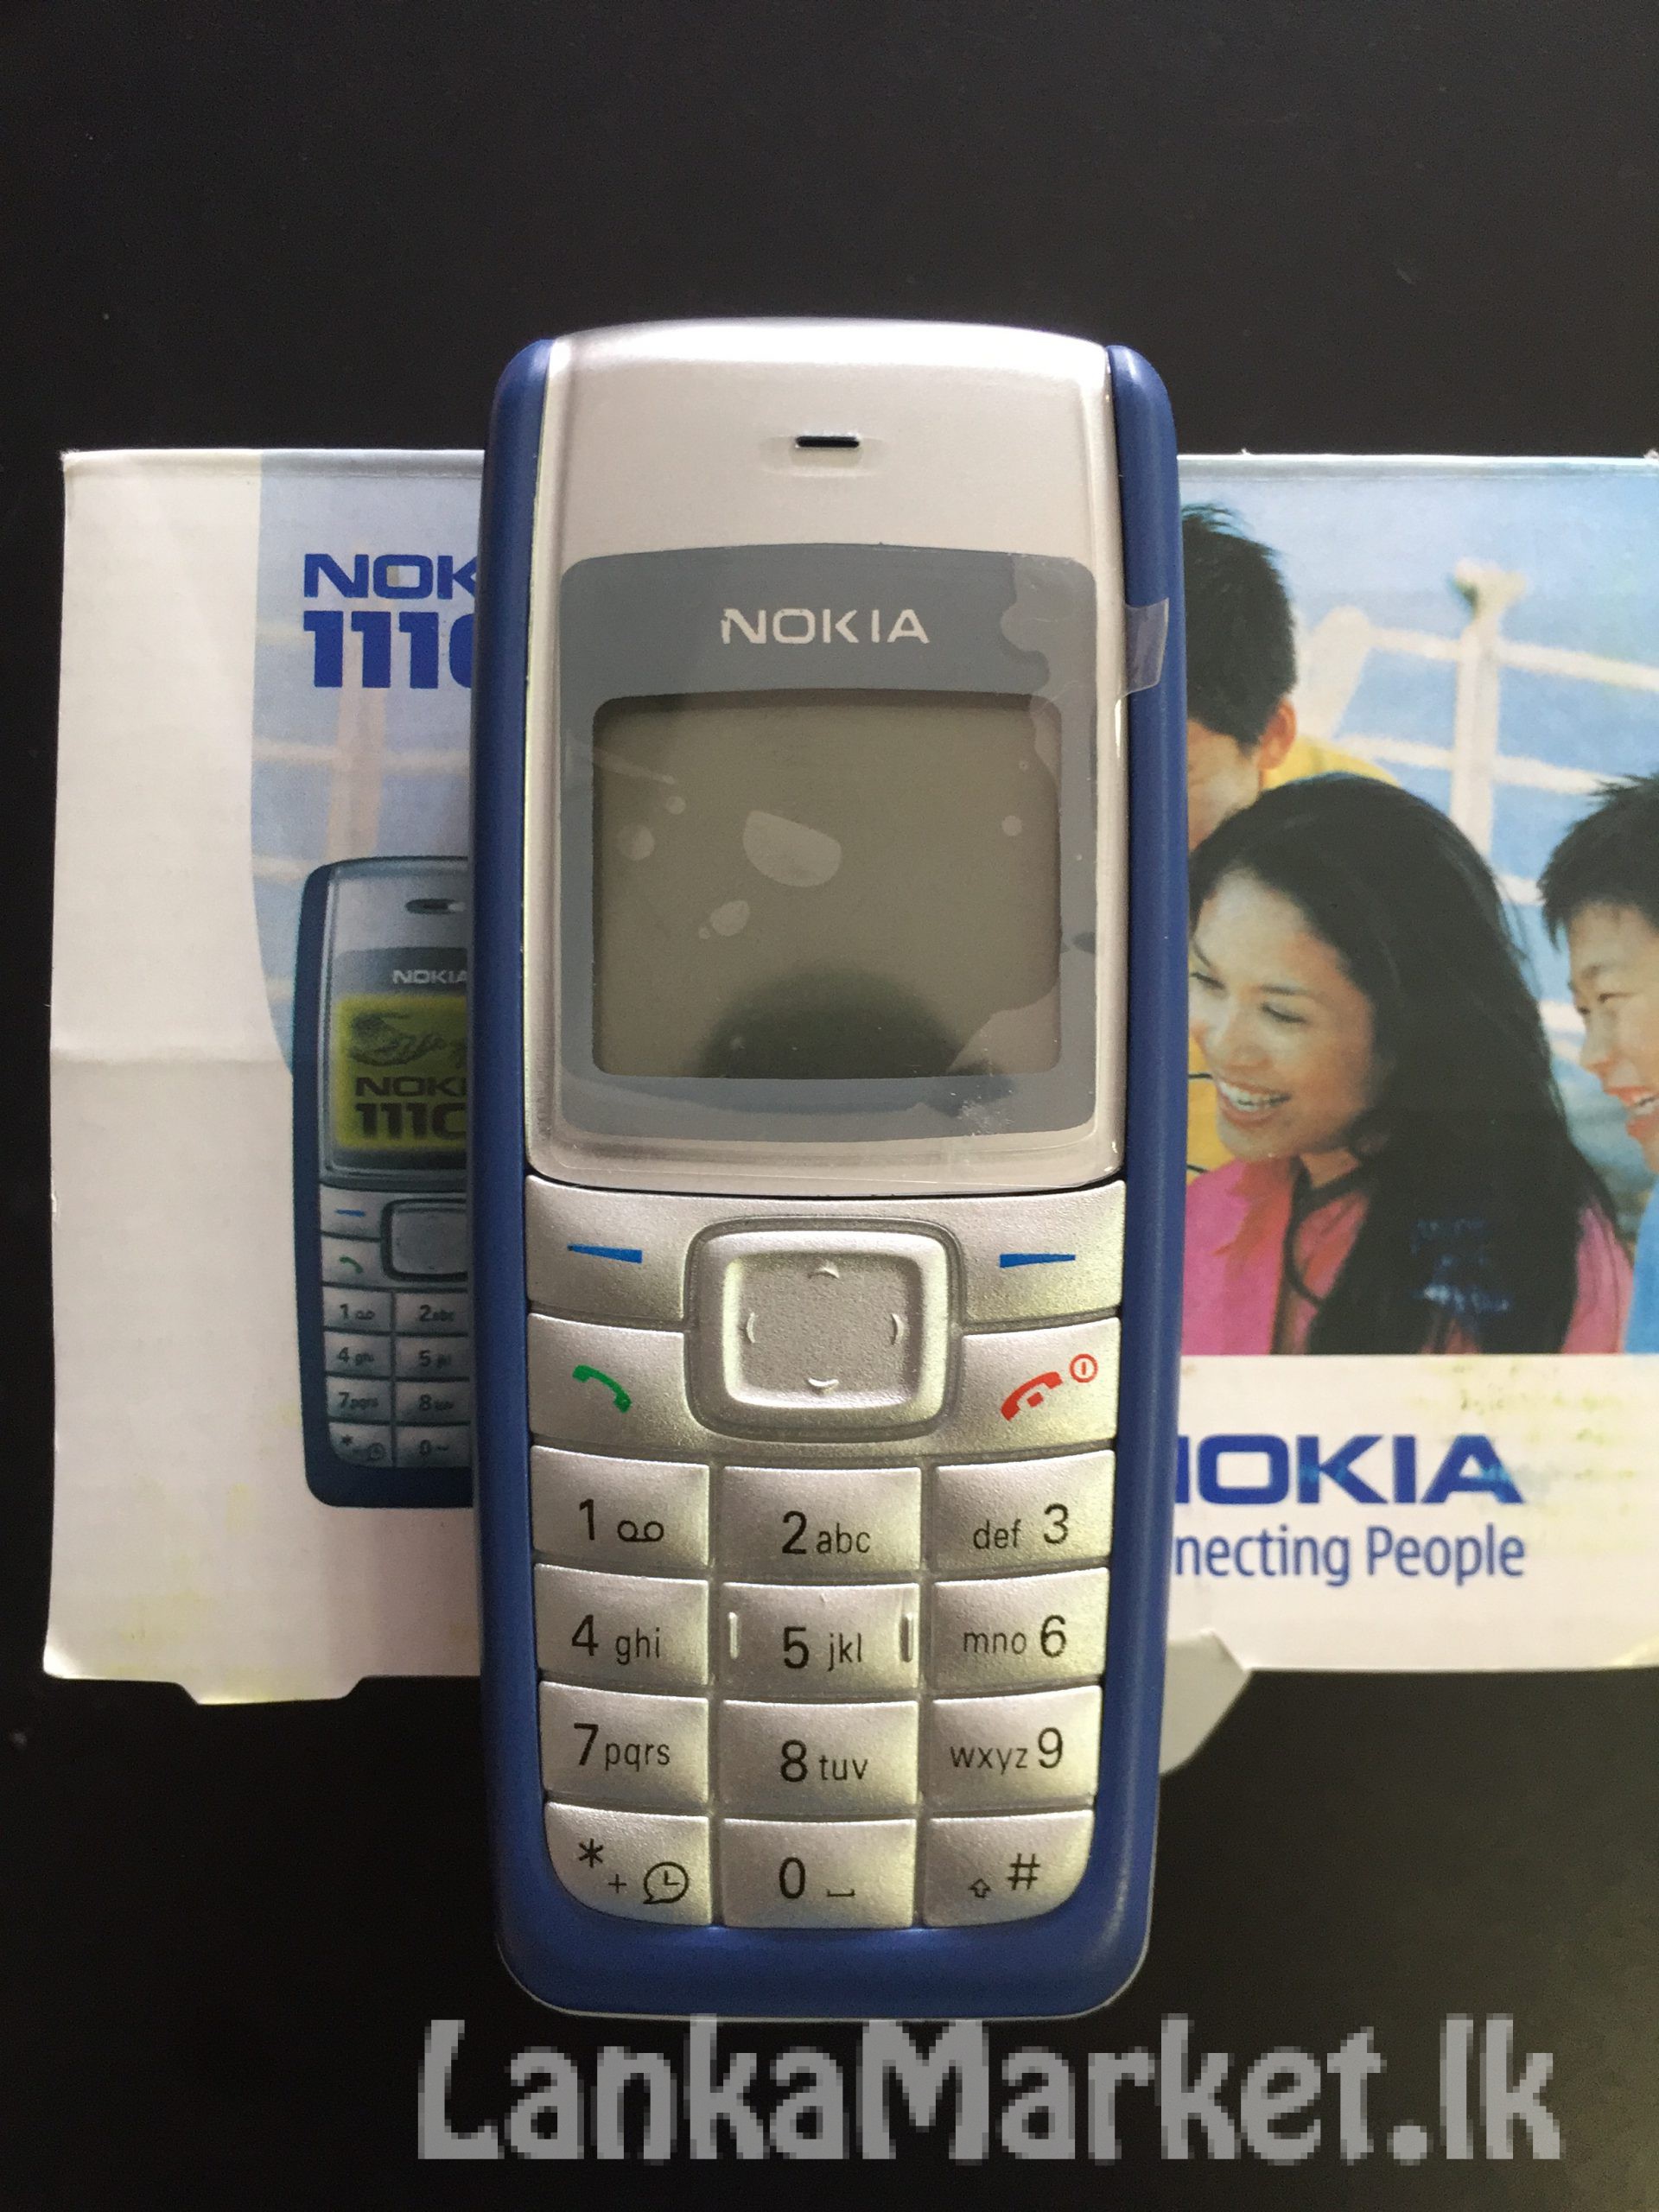 Nokia 1110 used